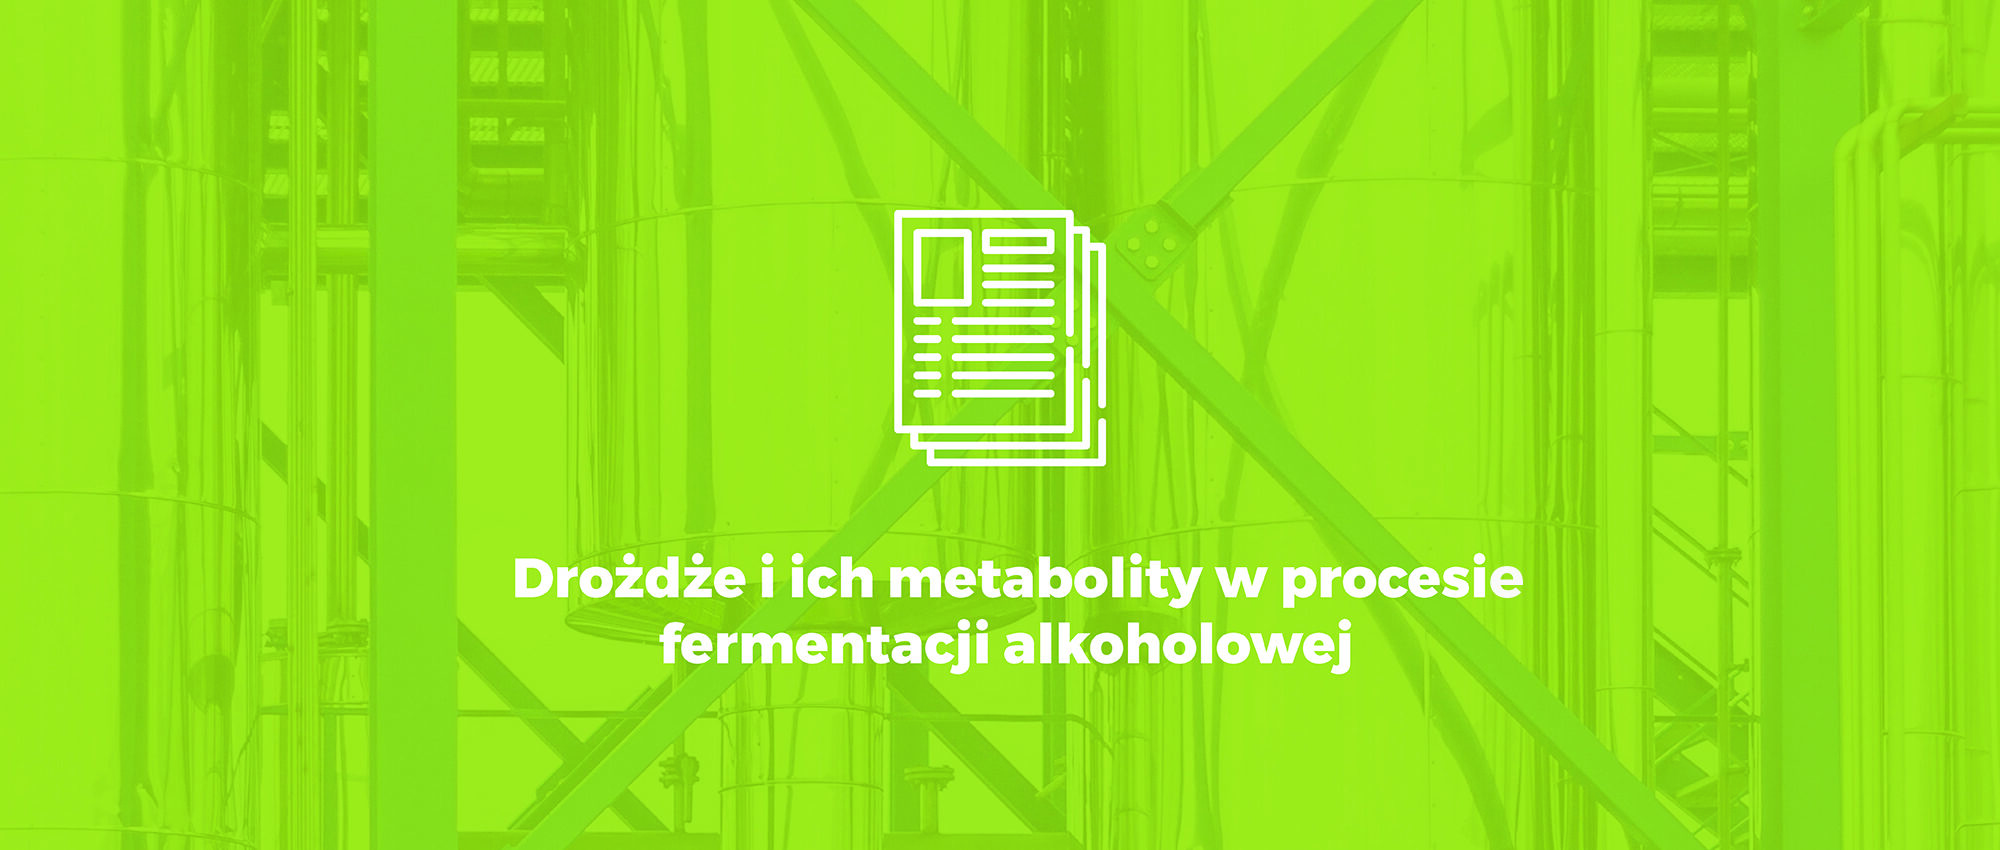 Drożdże i ich metabolity w procesie fermentacji alkoholowej